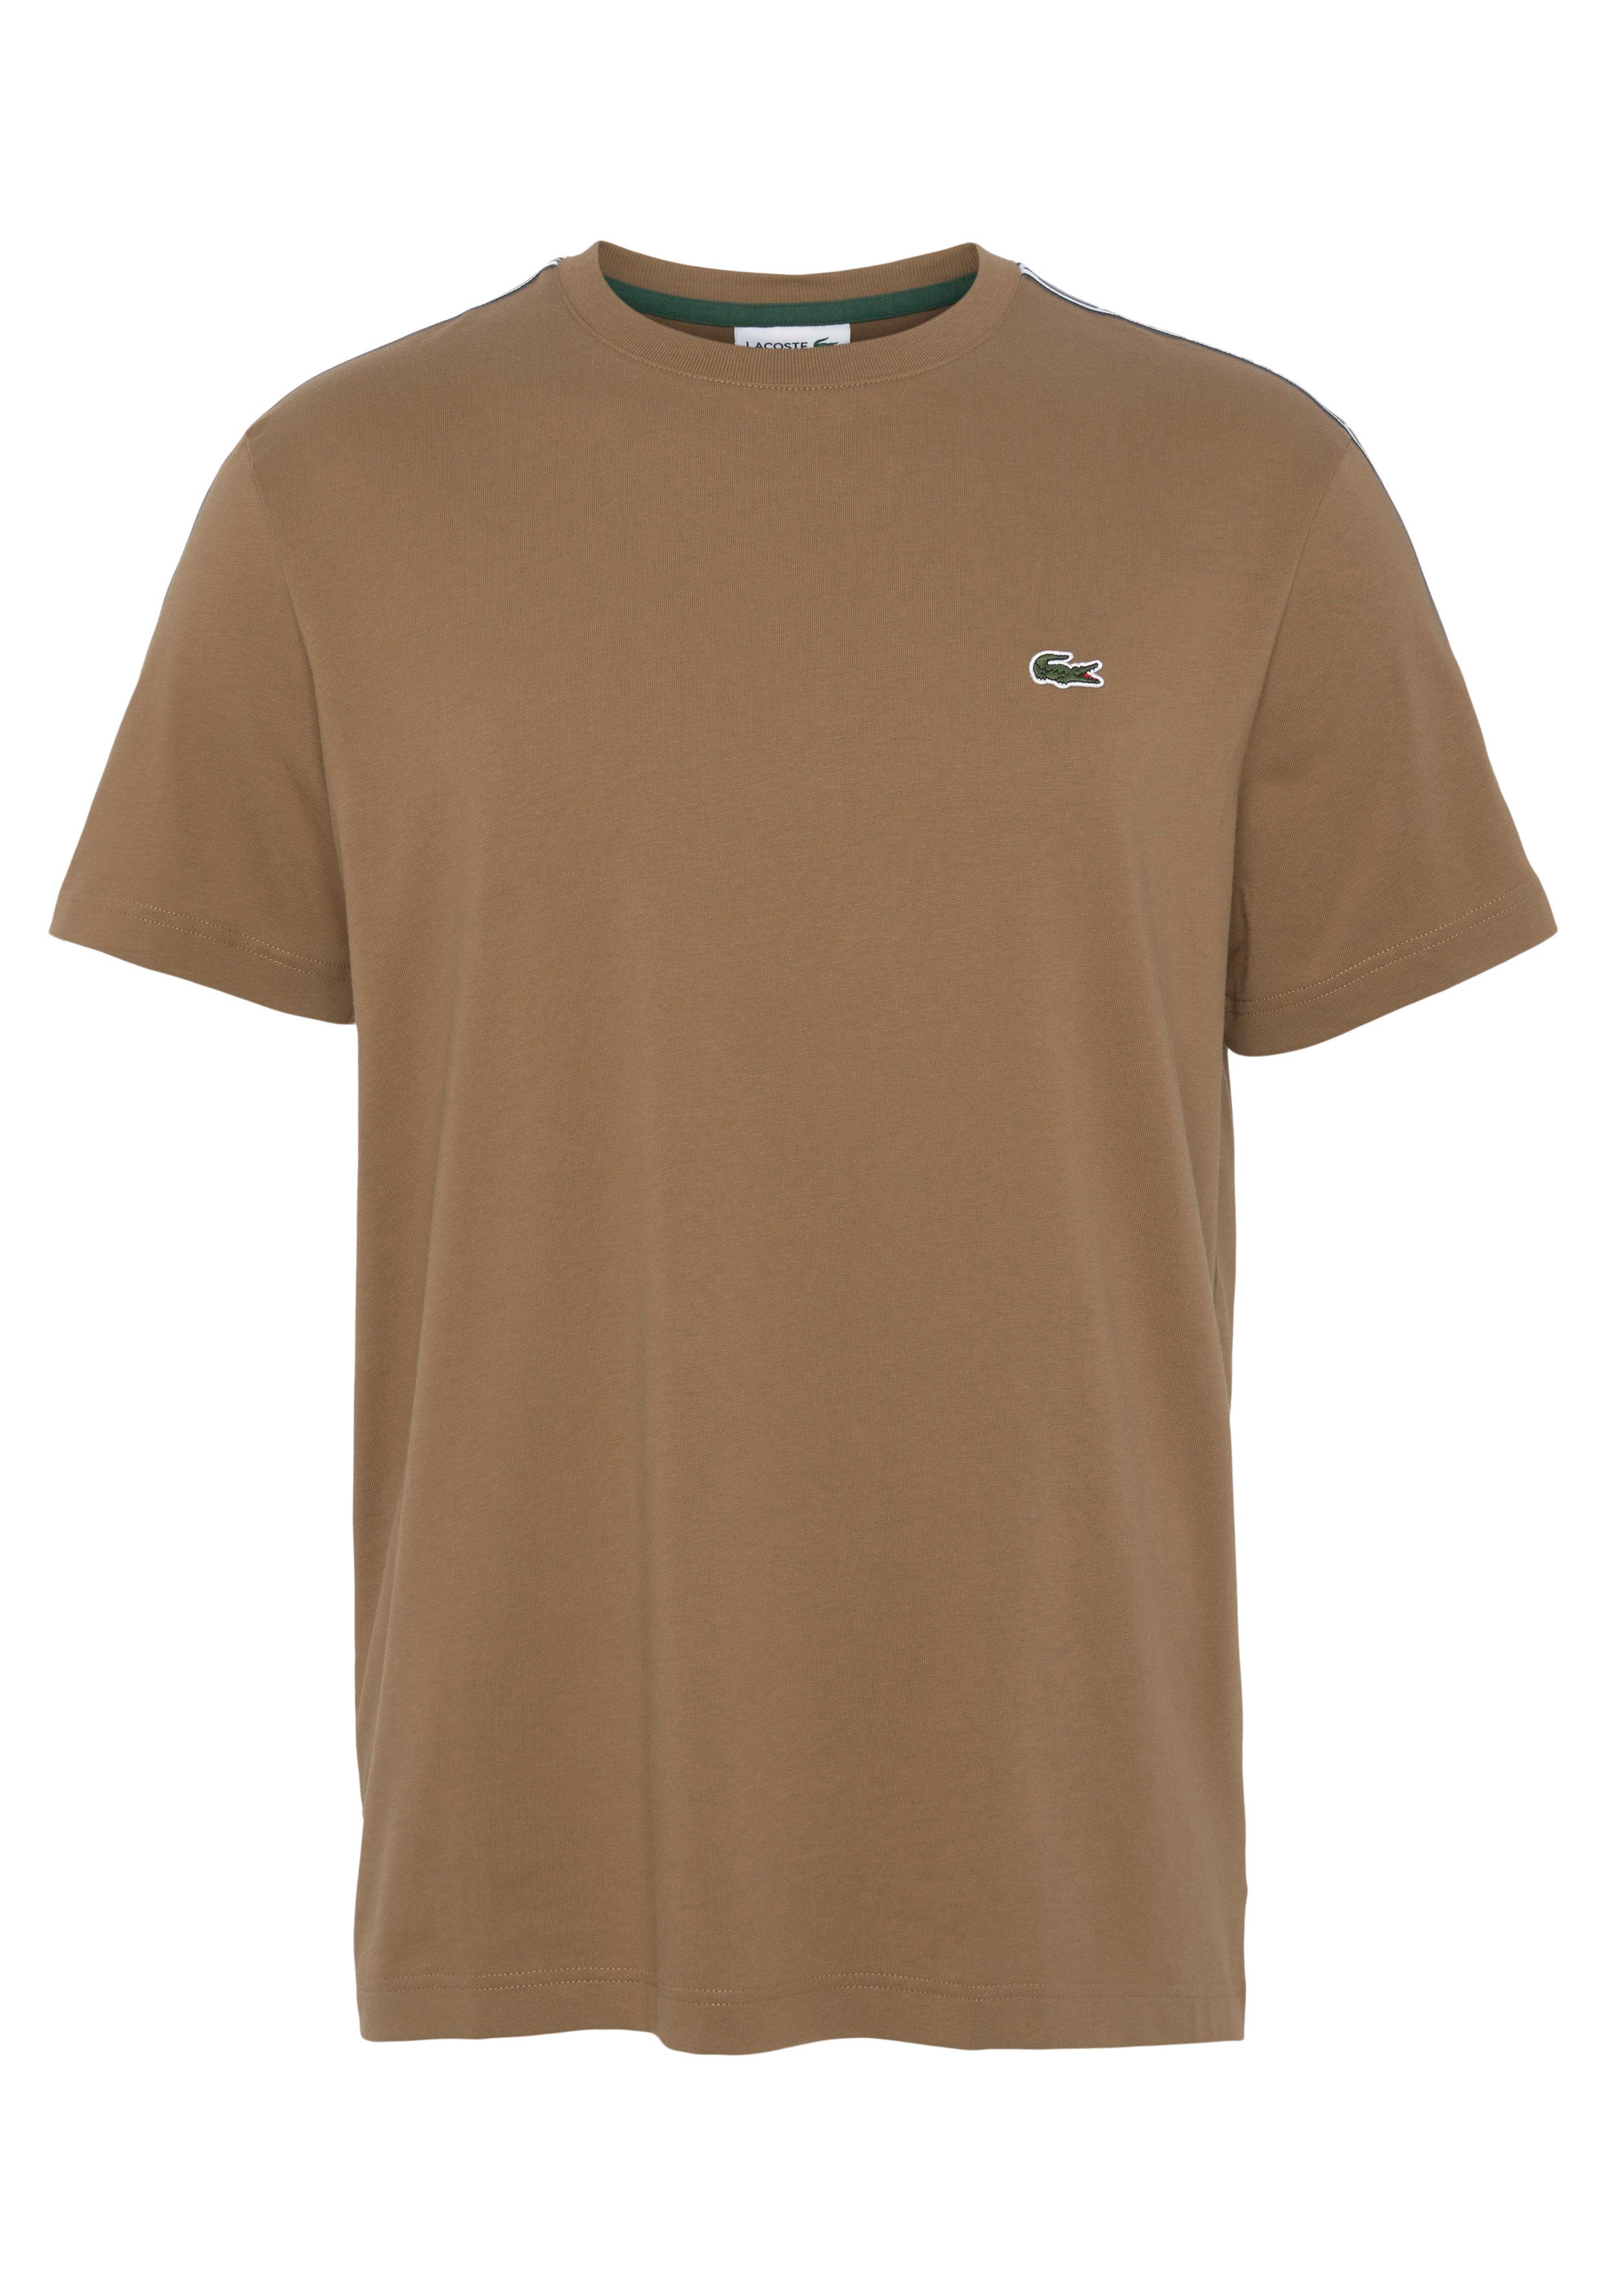 Lacoste T-Shirt mit an beschriftetem Kontrastband braun den Schultern